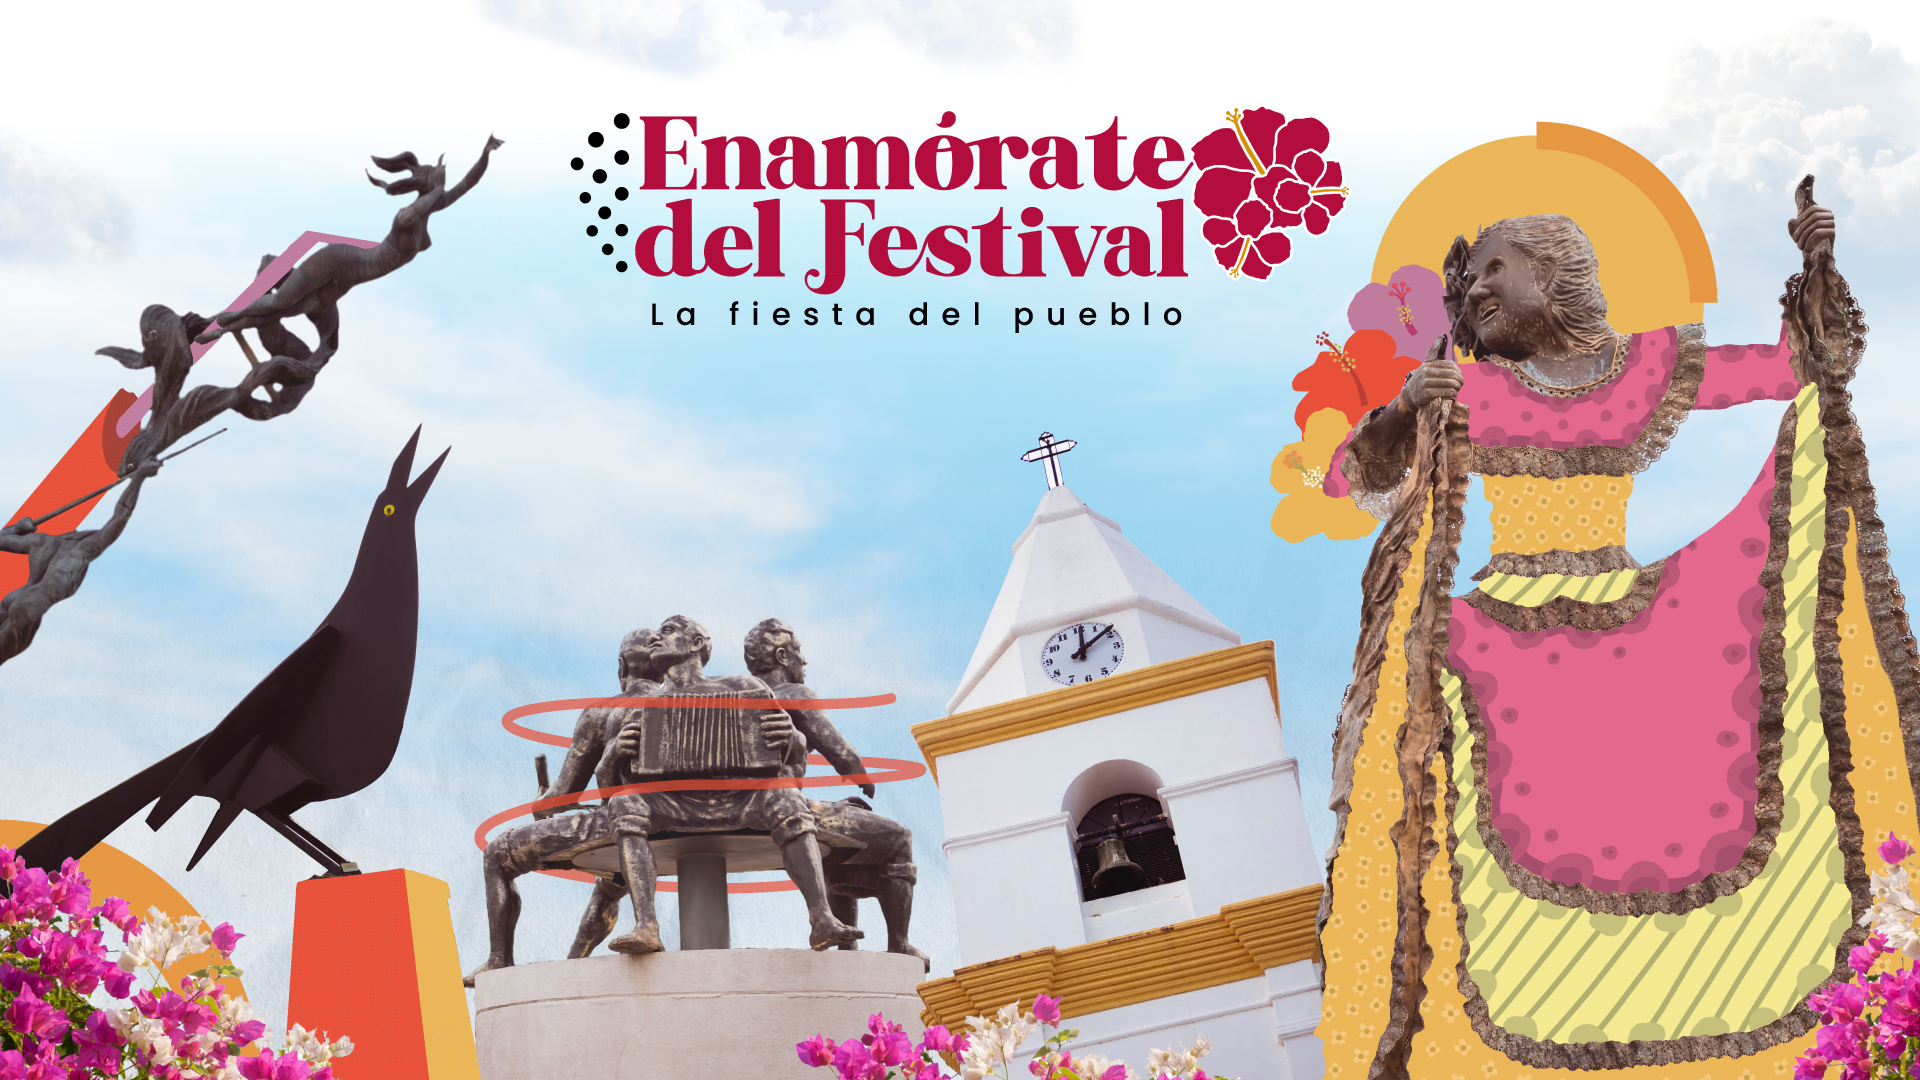 ¡Enamórate del Festival, la Fiesta del Pueblo! Una estrategia creada por la Cámara de Comercio de Valledupar